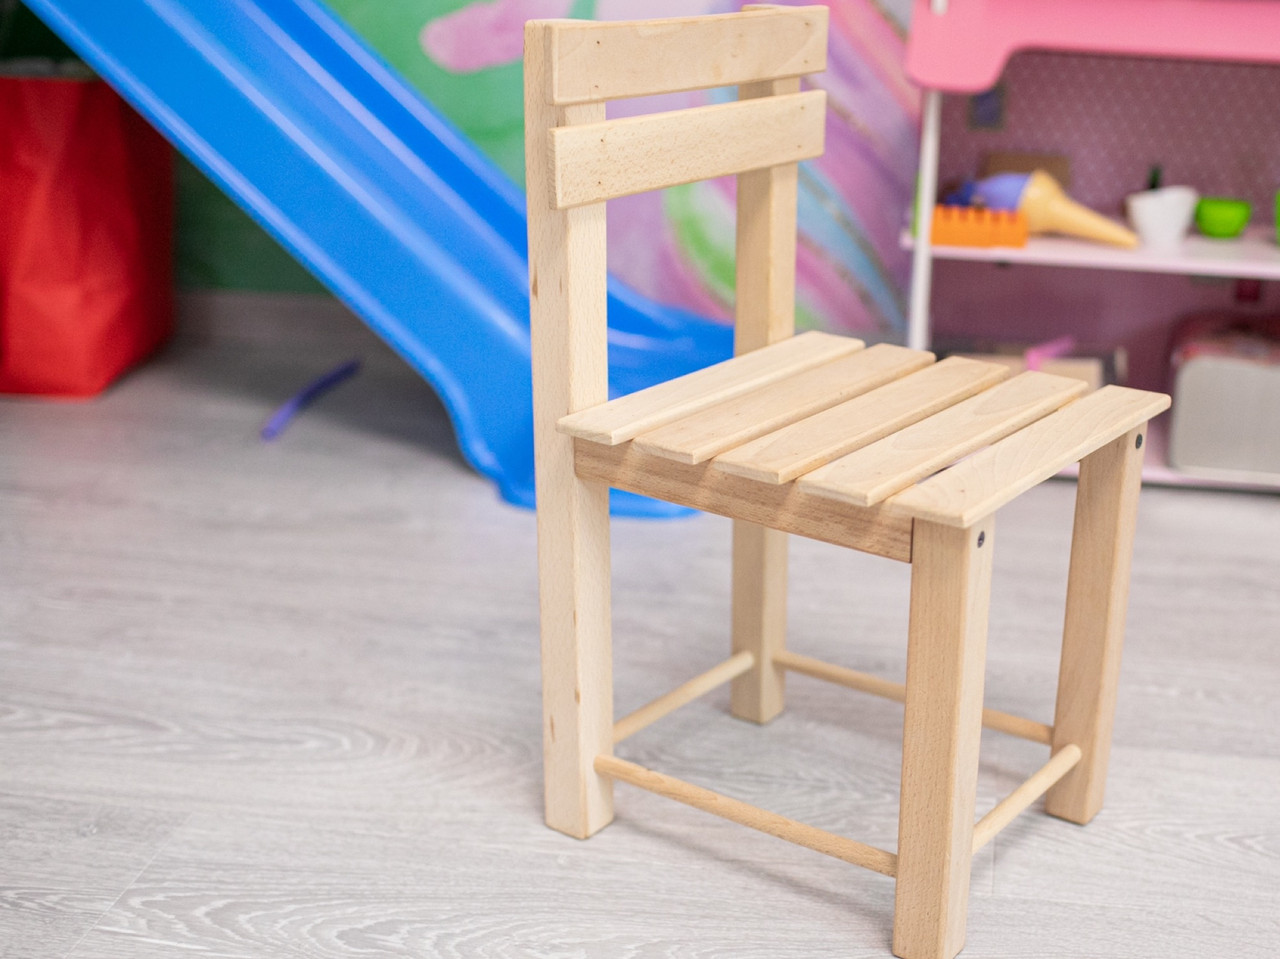 Дитячий дерев'яний стільчик 45х25х25 см меблі в дитячу кімнату з натурального дерева